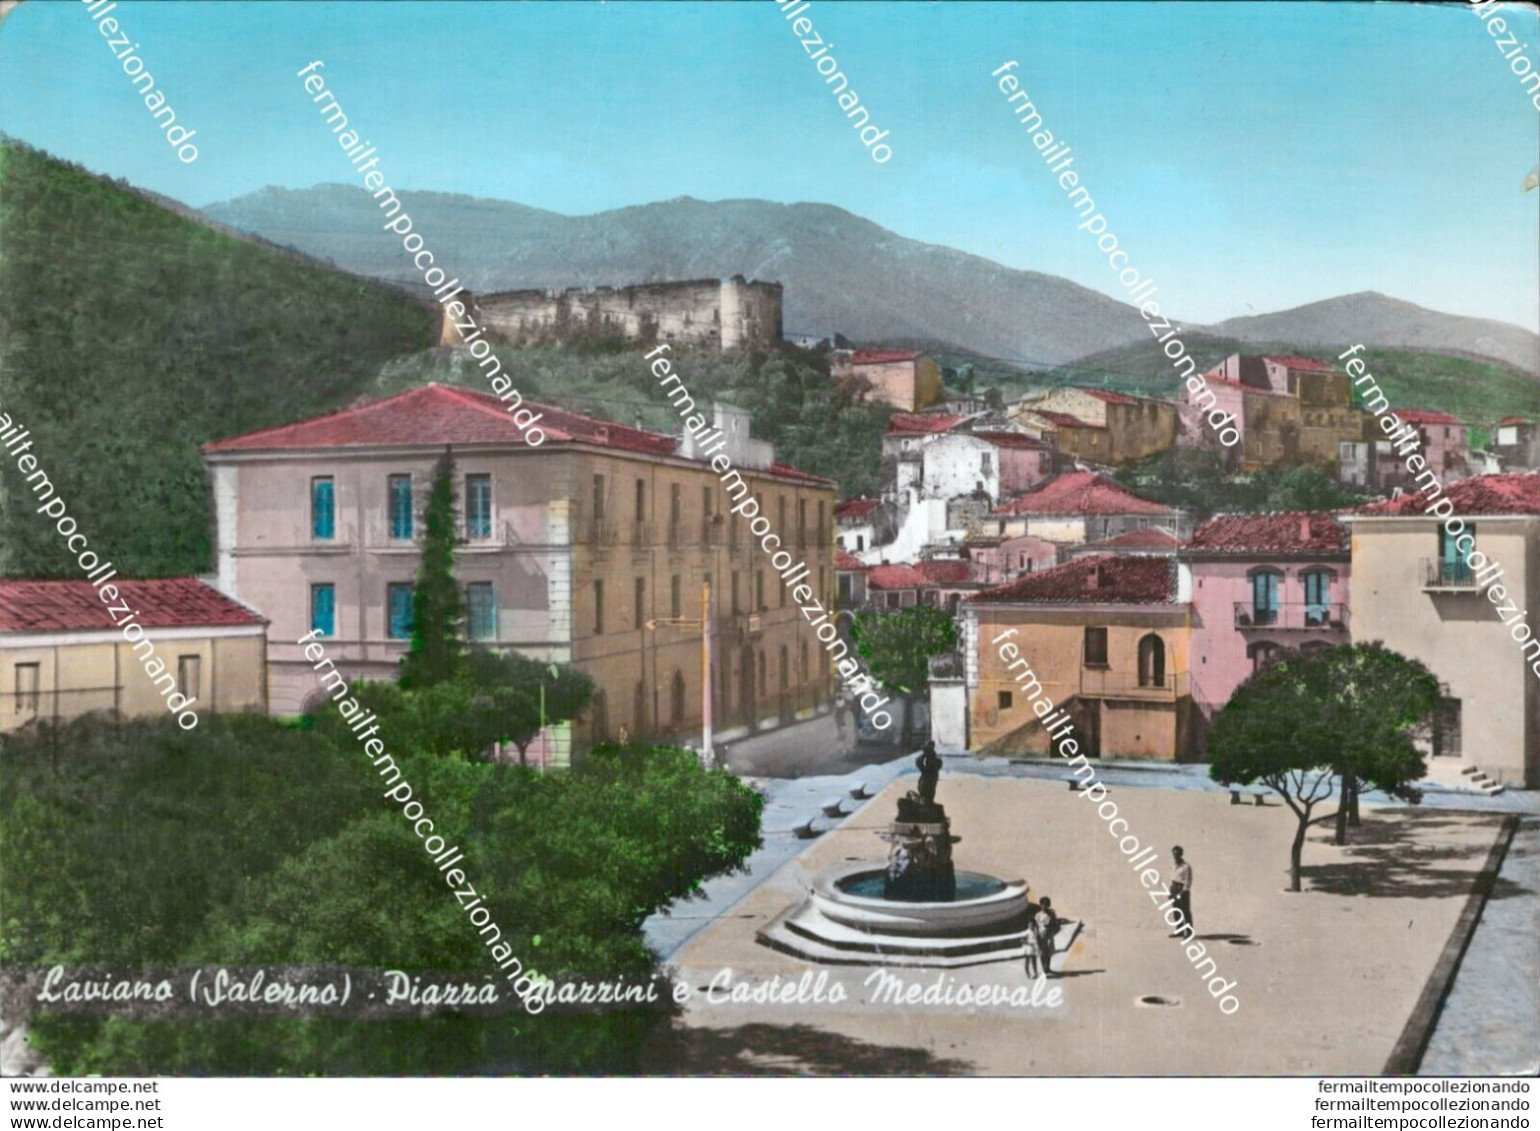 At595 Cartolina Laviano Piazza Mazzini E Castello Medioevale Provinciadi Salerno - Salerno